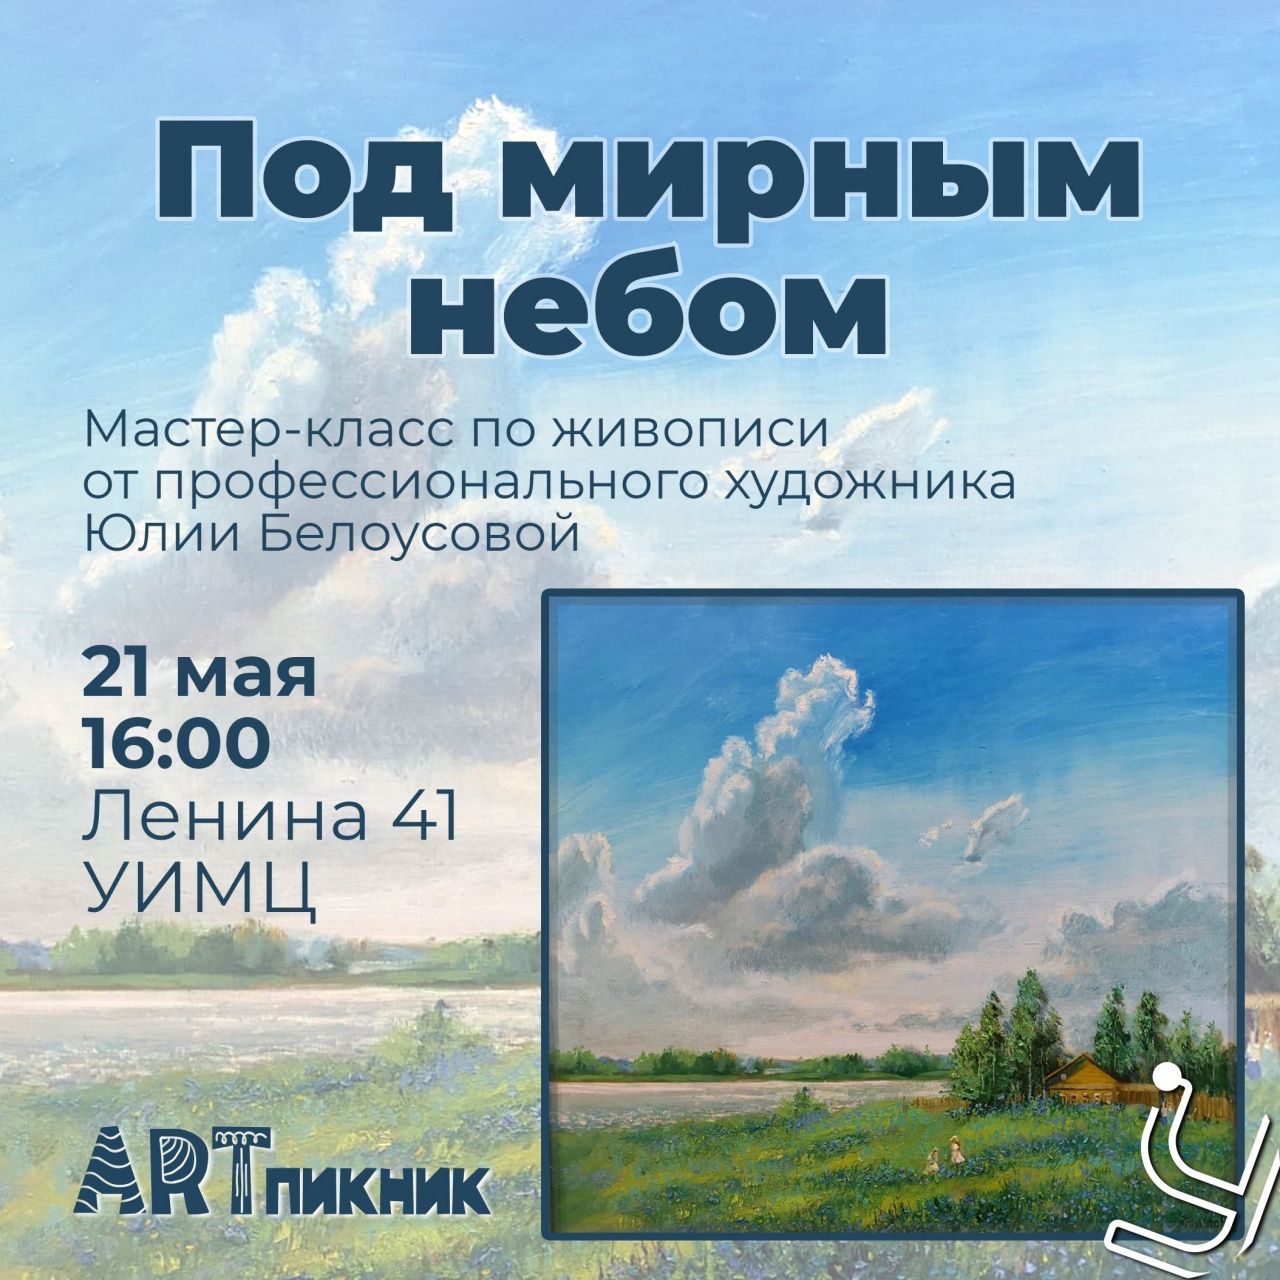 Сегодня горожане нарисуют картину вместе с художником Юлией Белоусовой. Приходите!